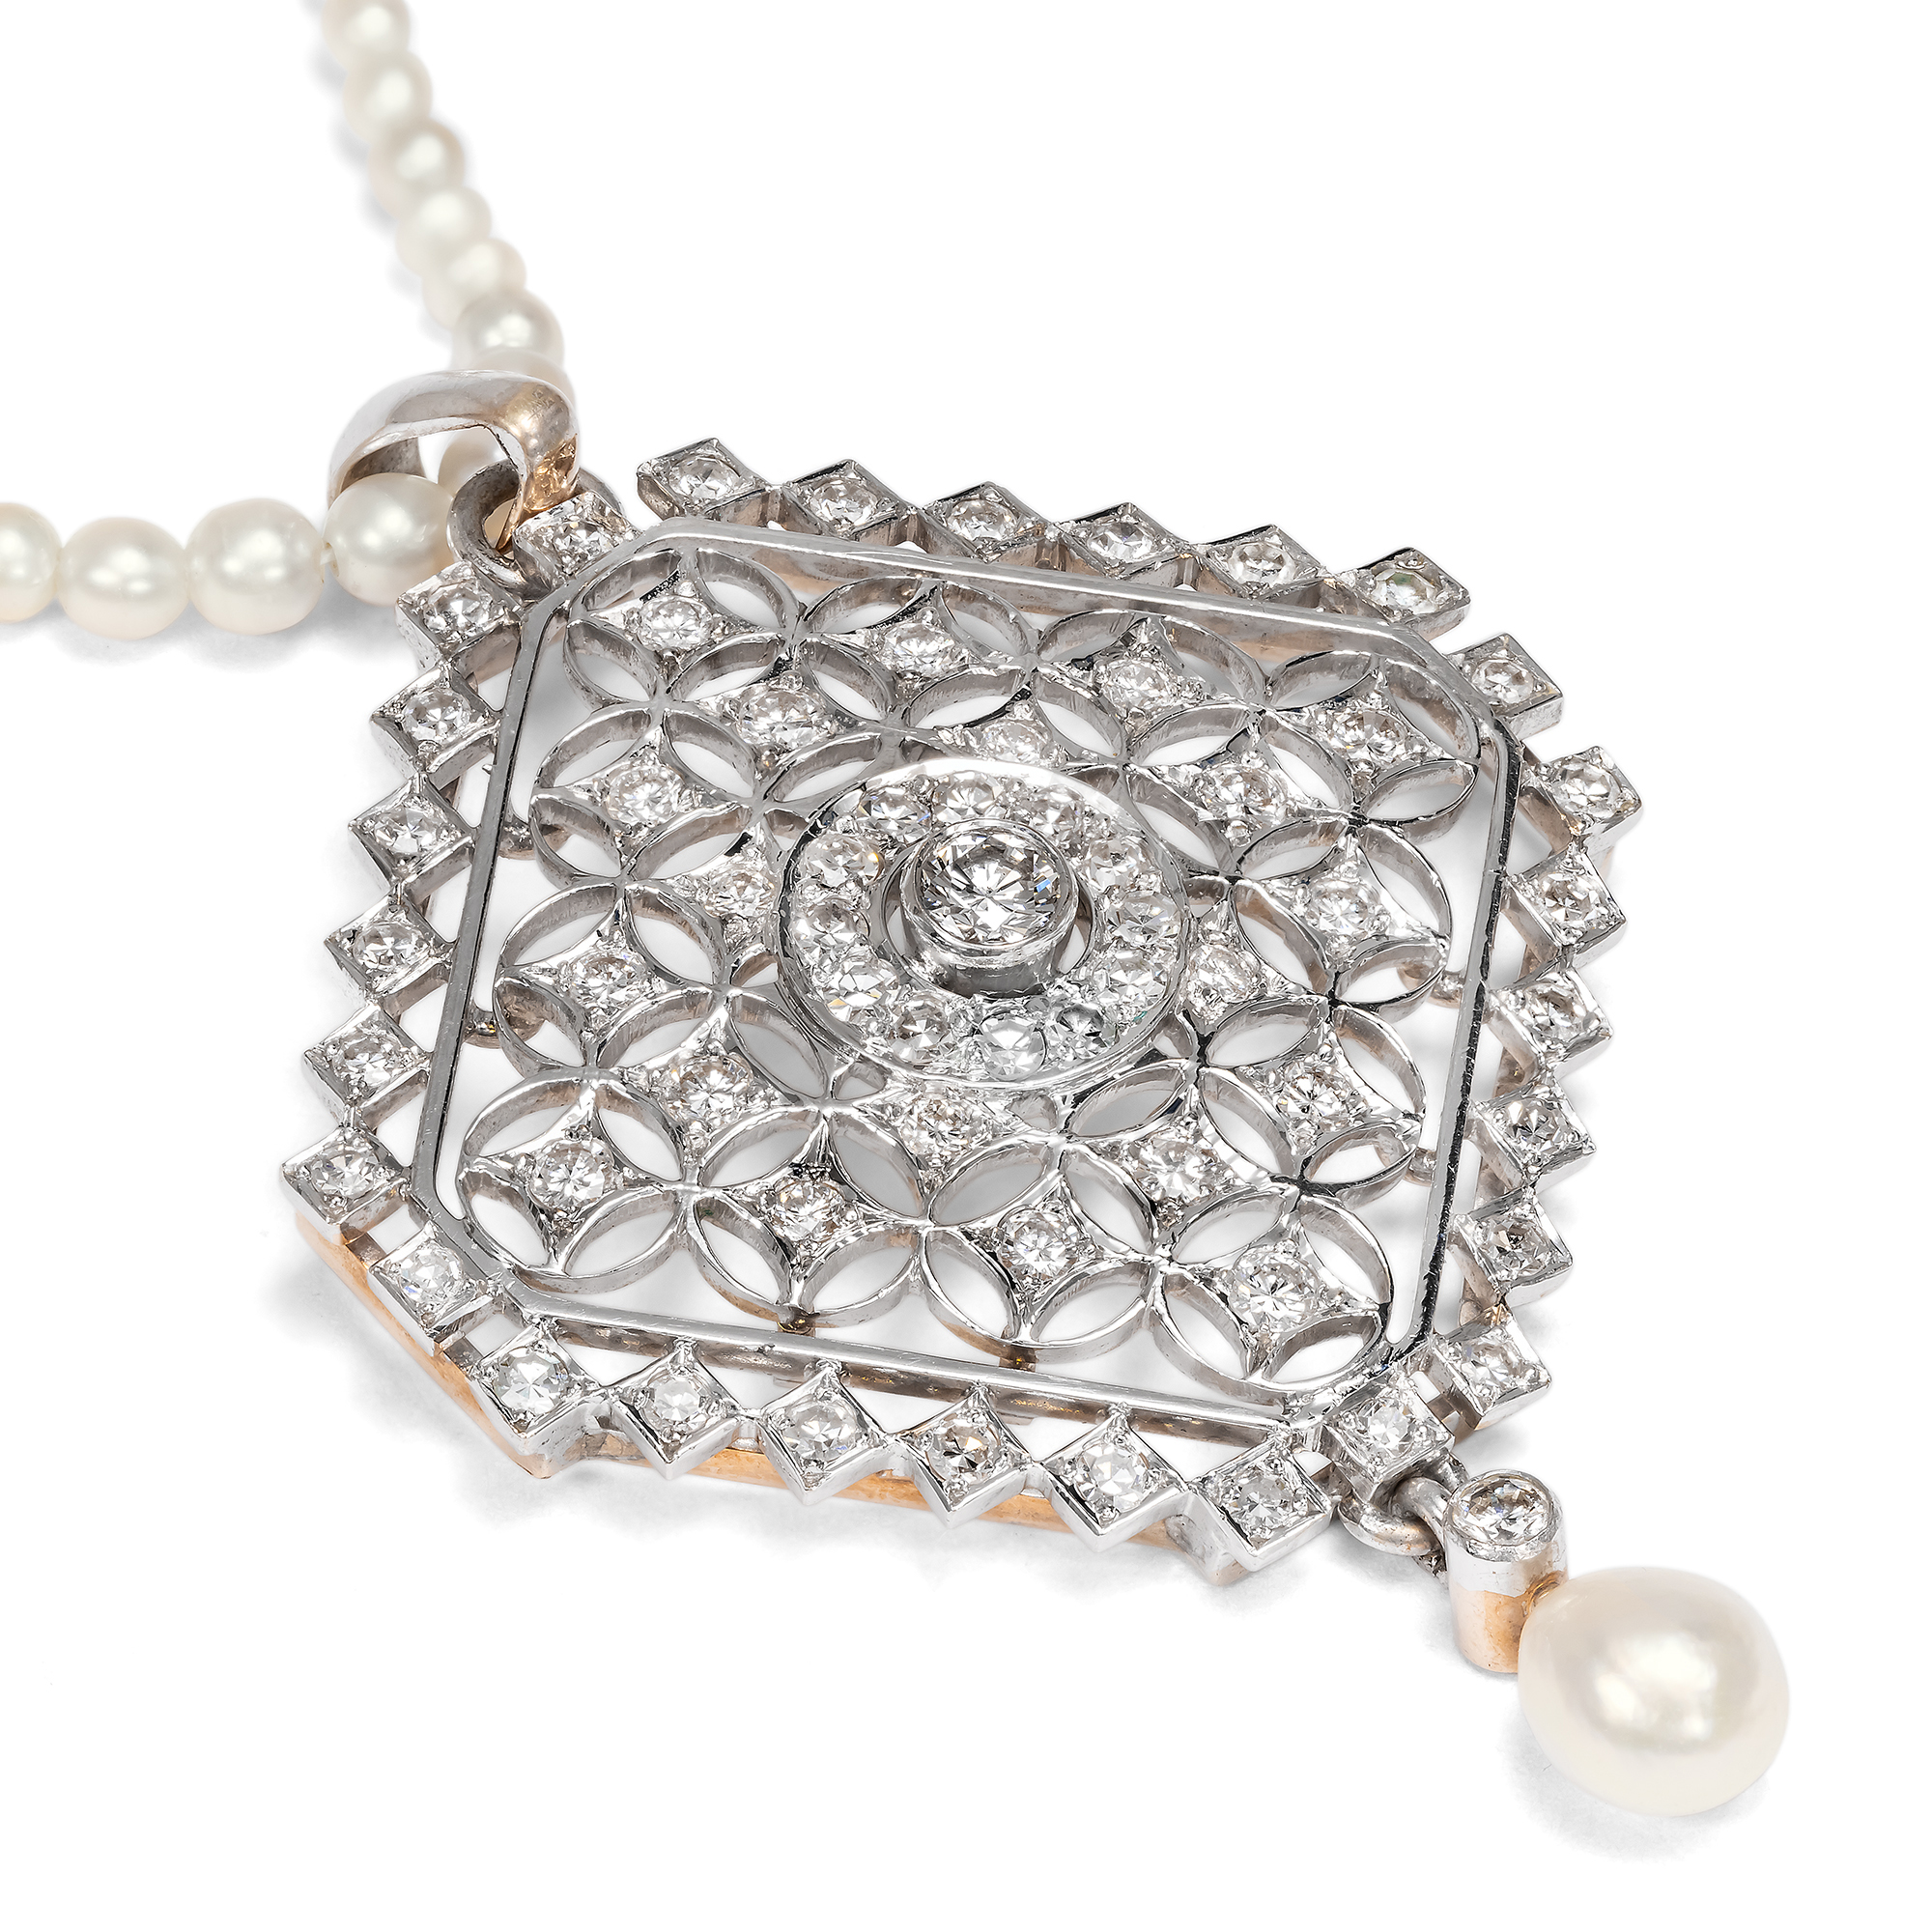 Exquisites Collier mit Diamanten & Naturperlen in Formen der Belle Époque, um 2000